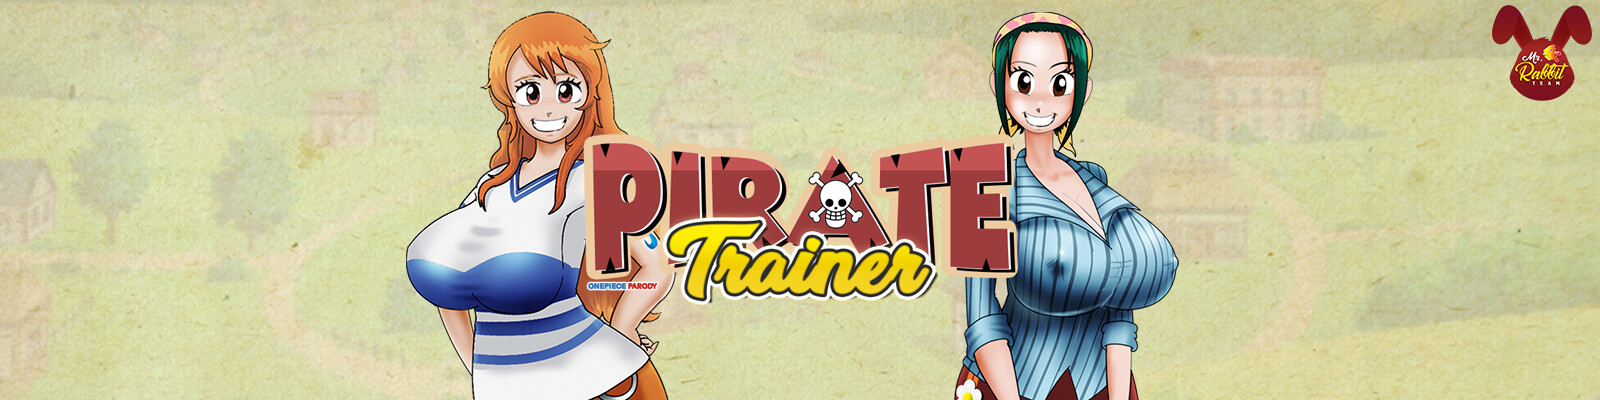 Pirate Trainer Main Image